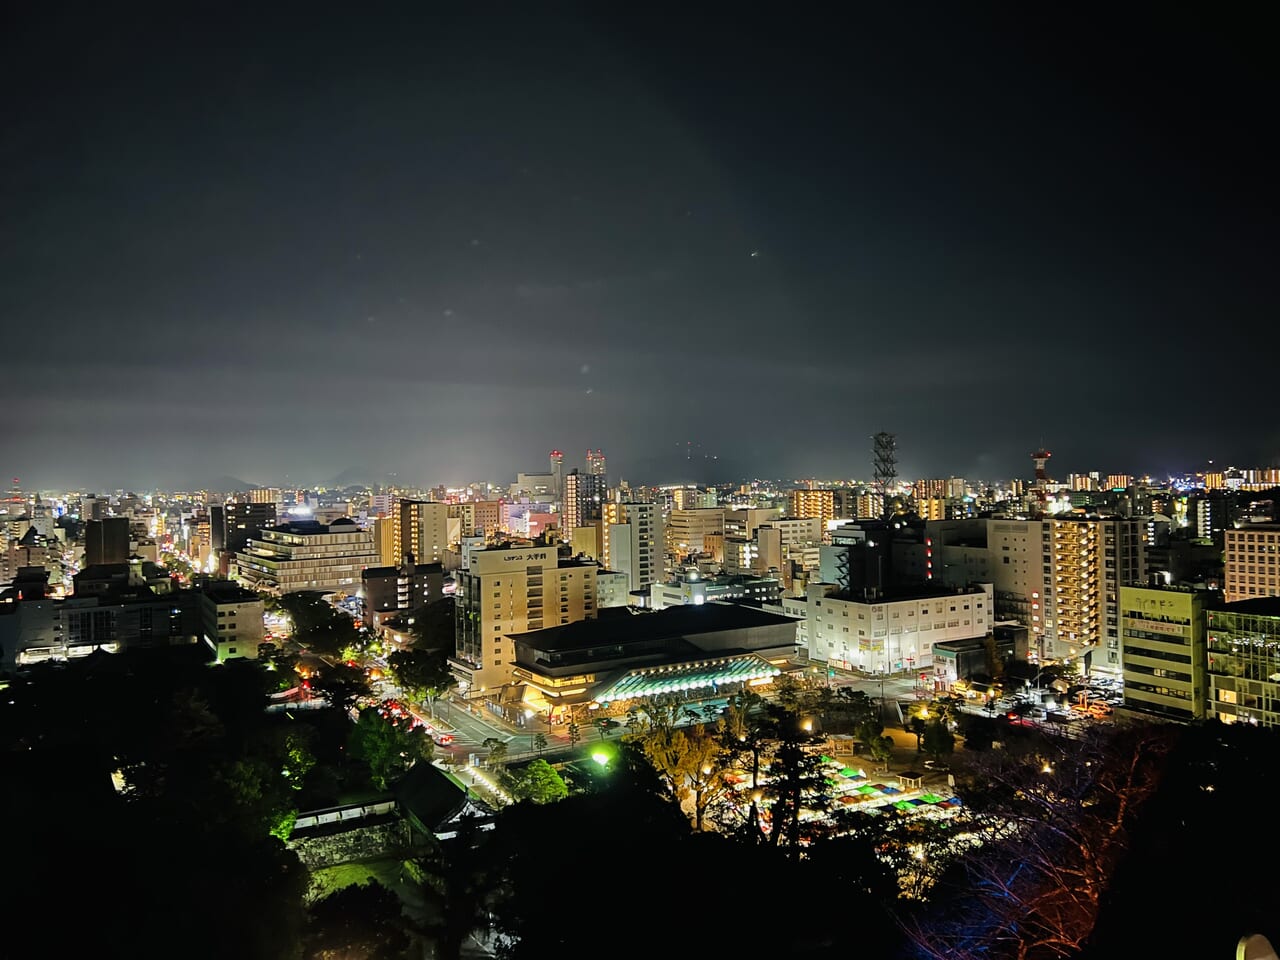 「NAKED夜まつり 高知城」の「高知城」天守閣から見る景色